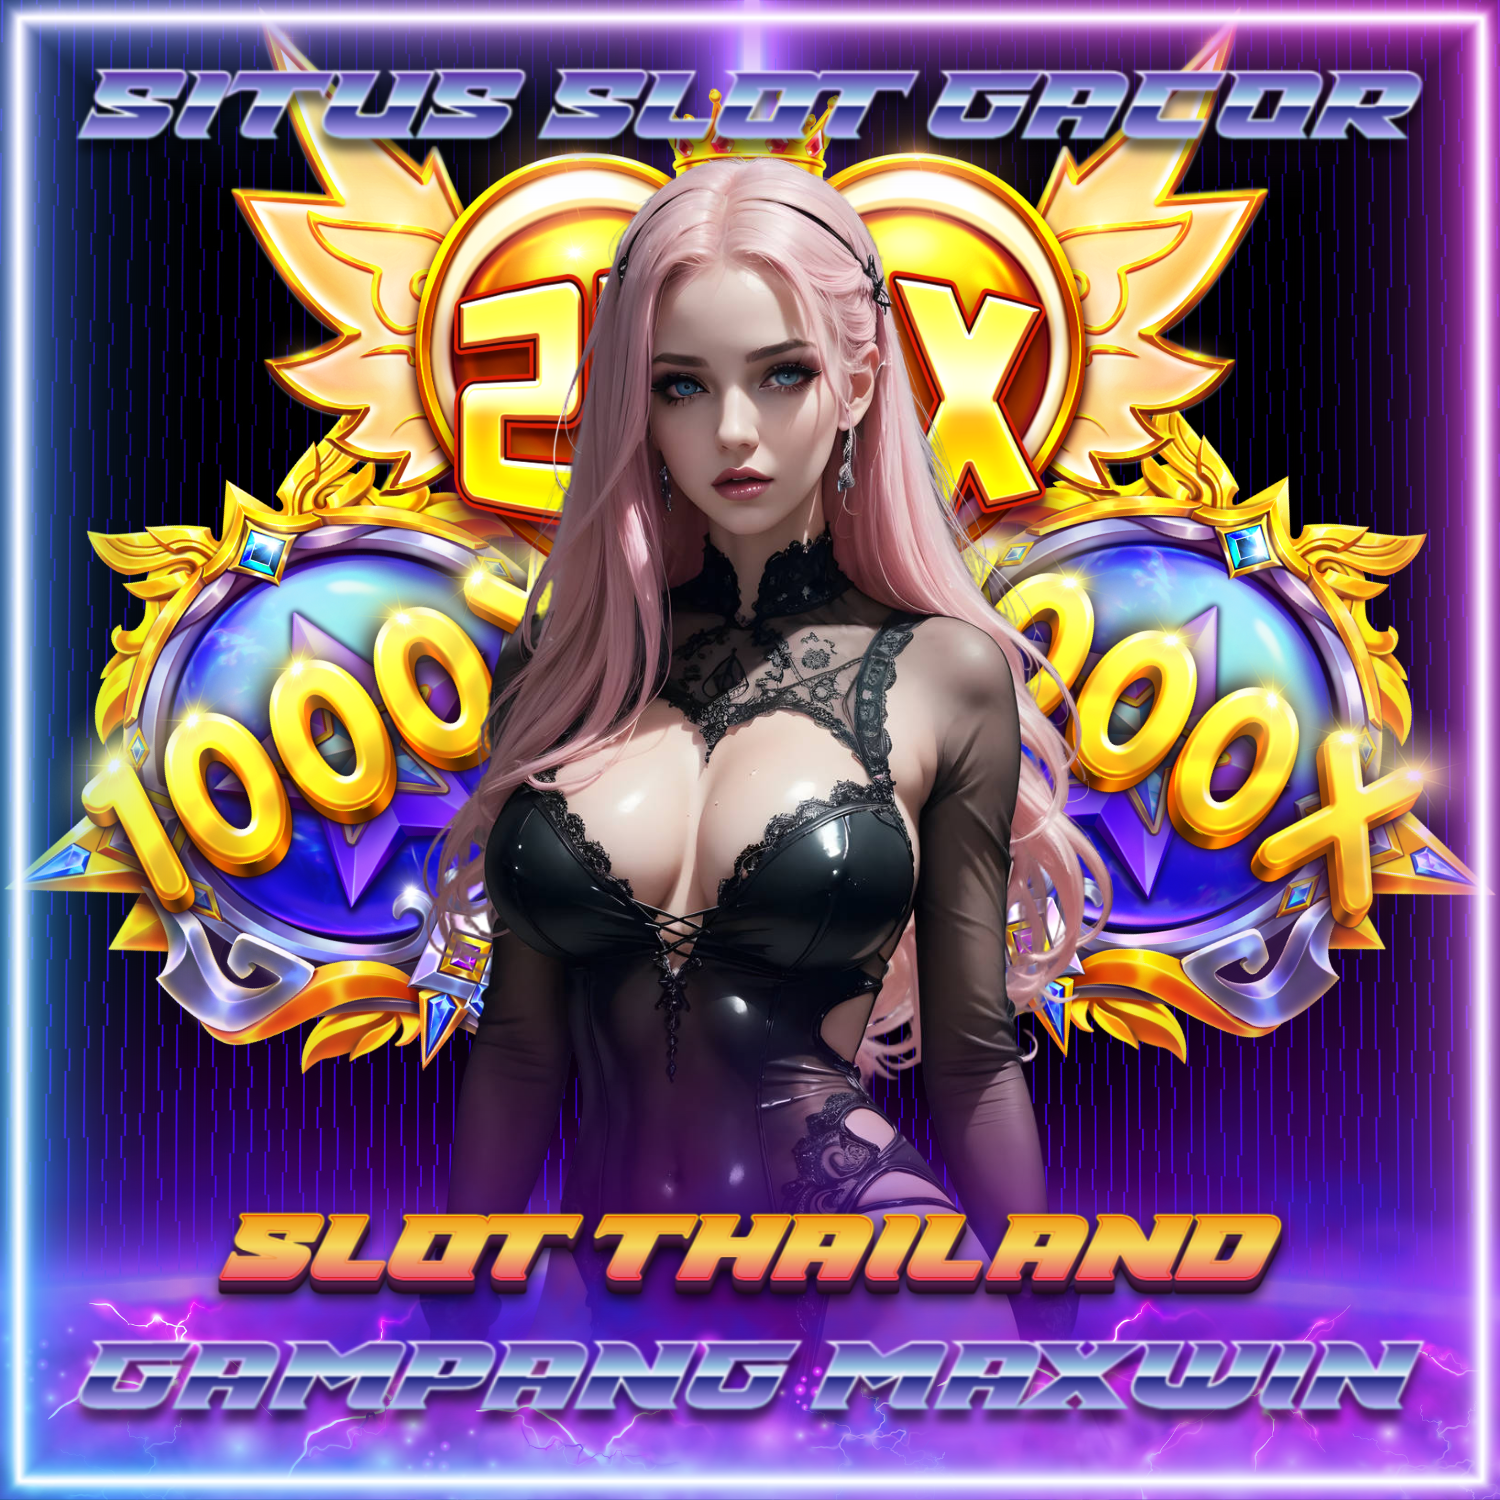 Menangkan Hadiah Menarik di Situs Slot Server Thailand Berkualitas